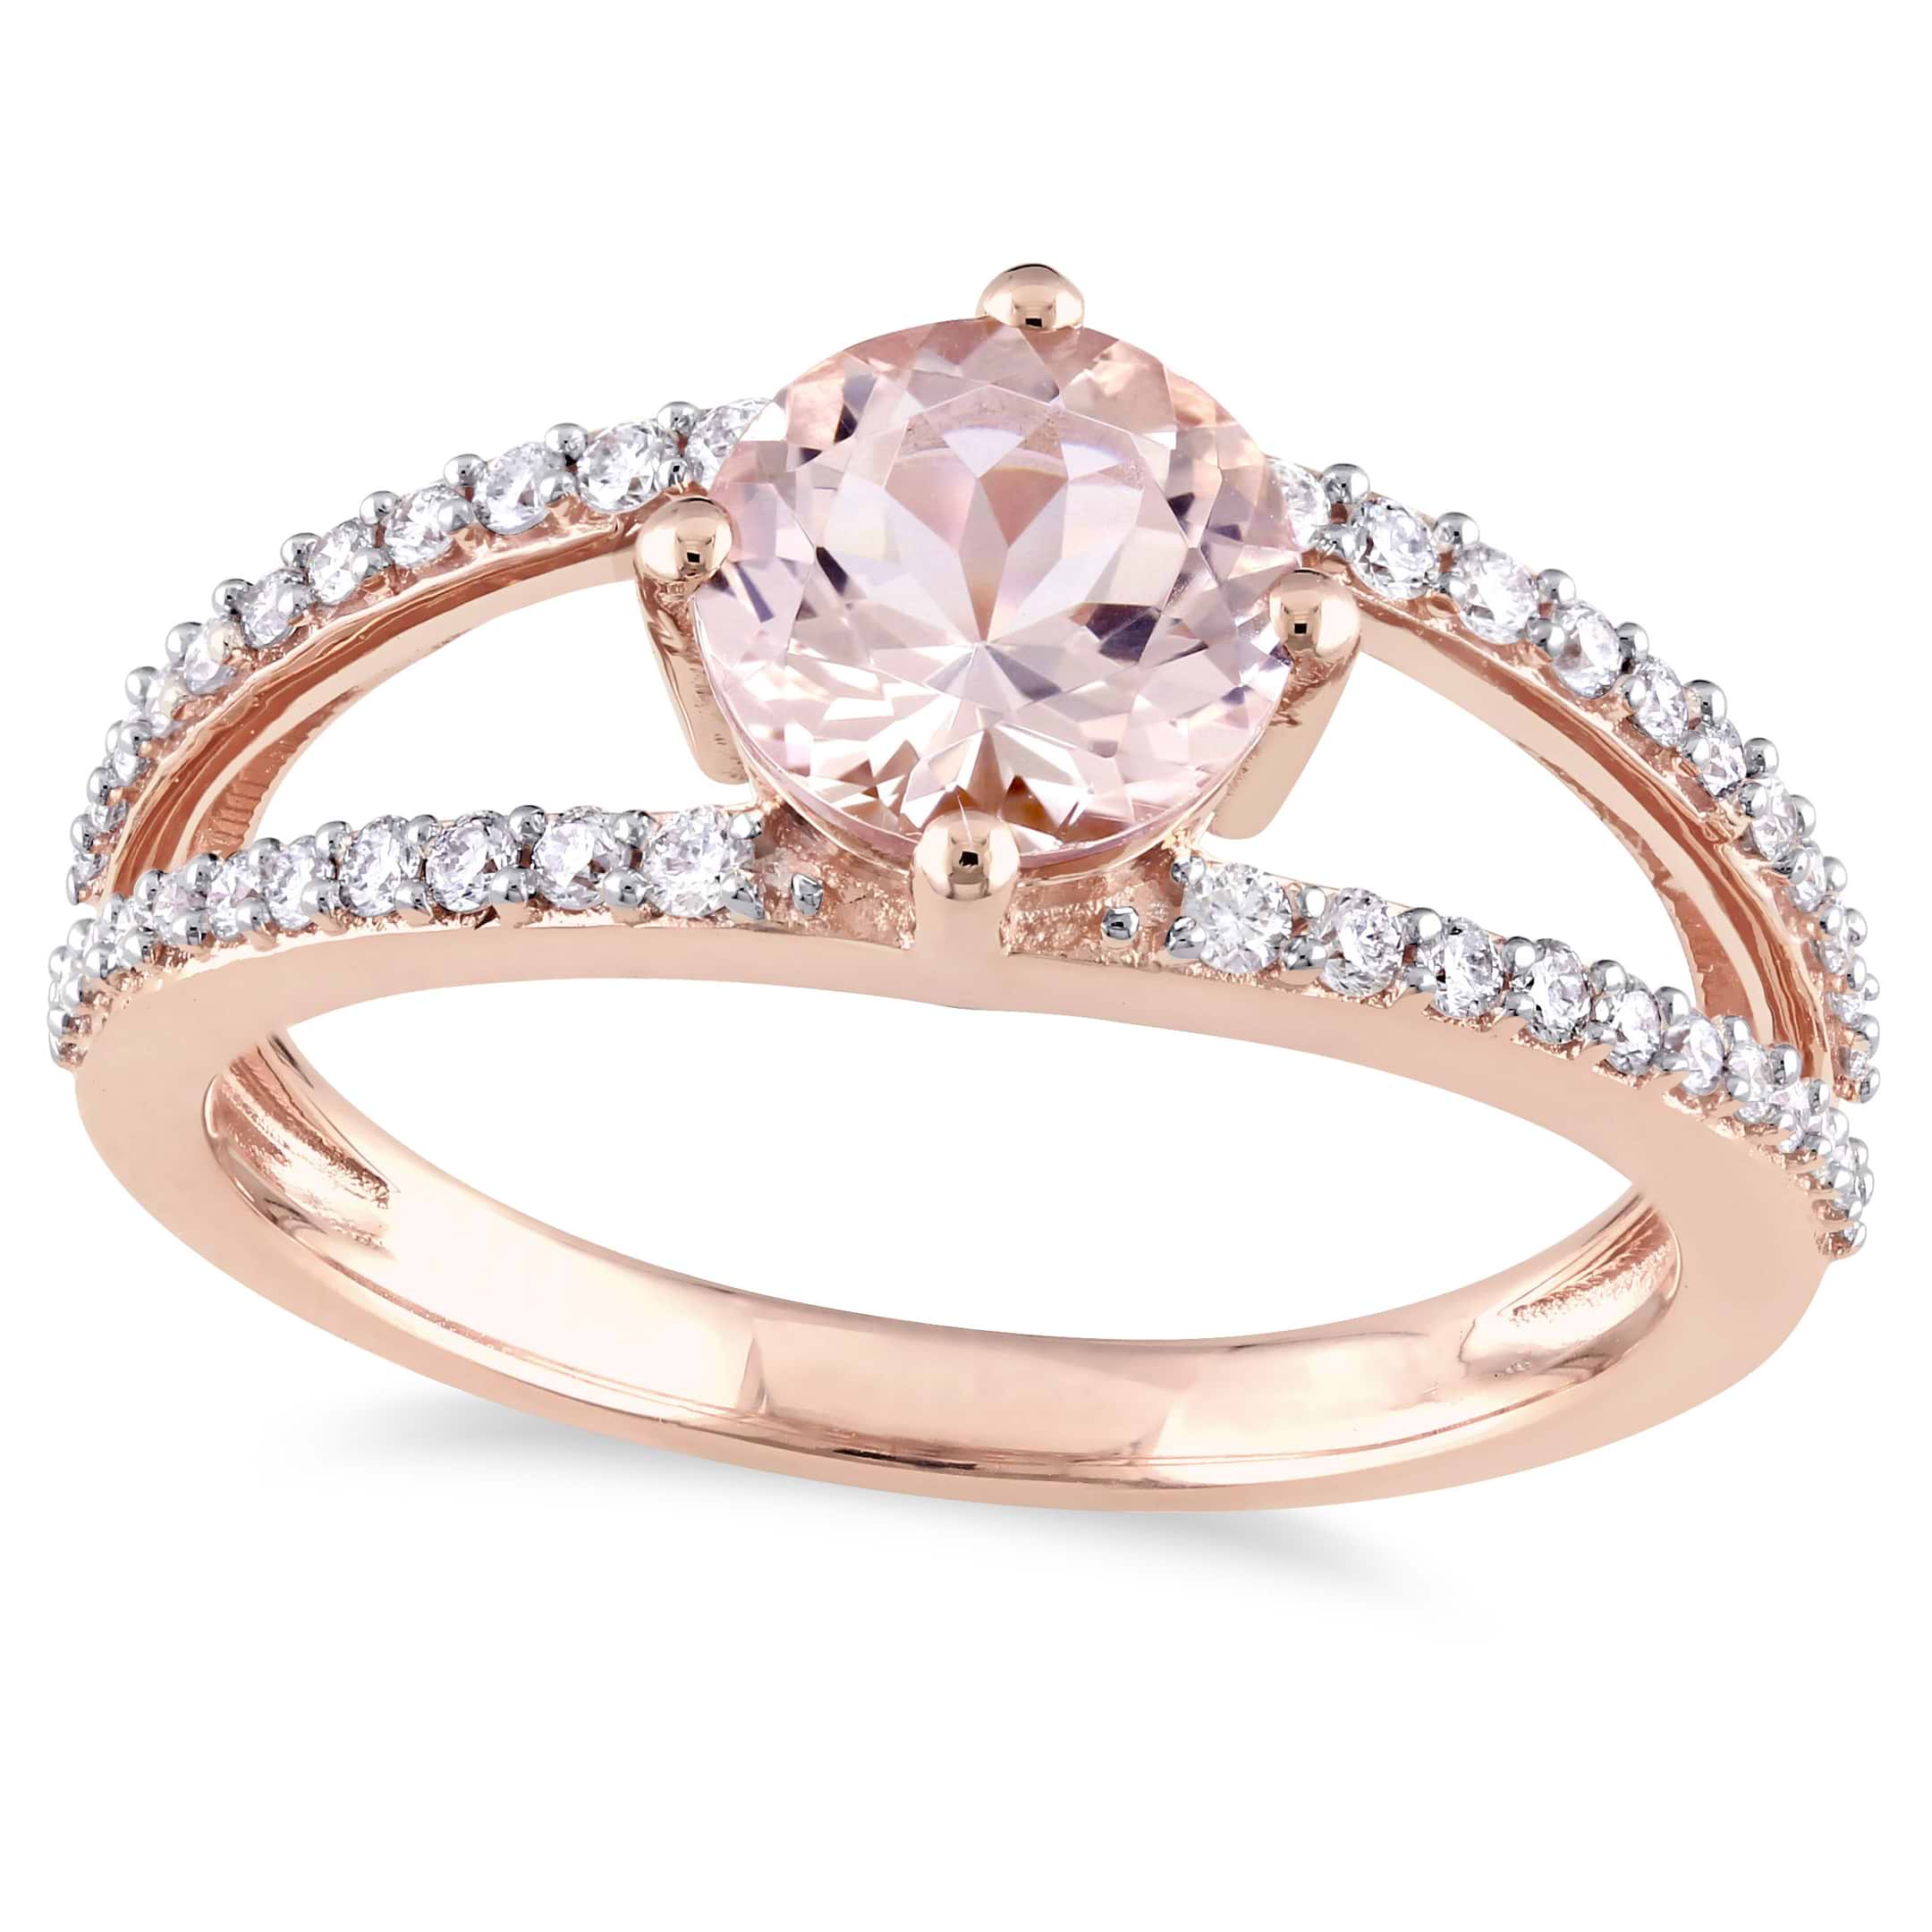 Round Morganite & Diamond Fashion Ring 14K Rose Gold (1.46ct)